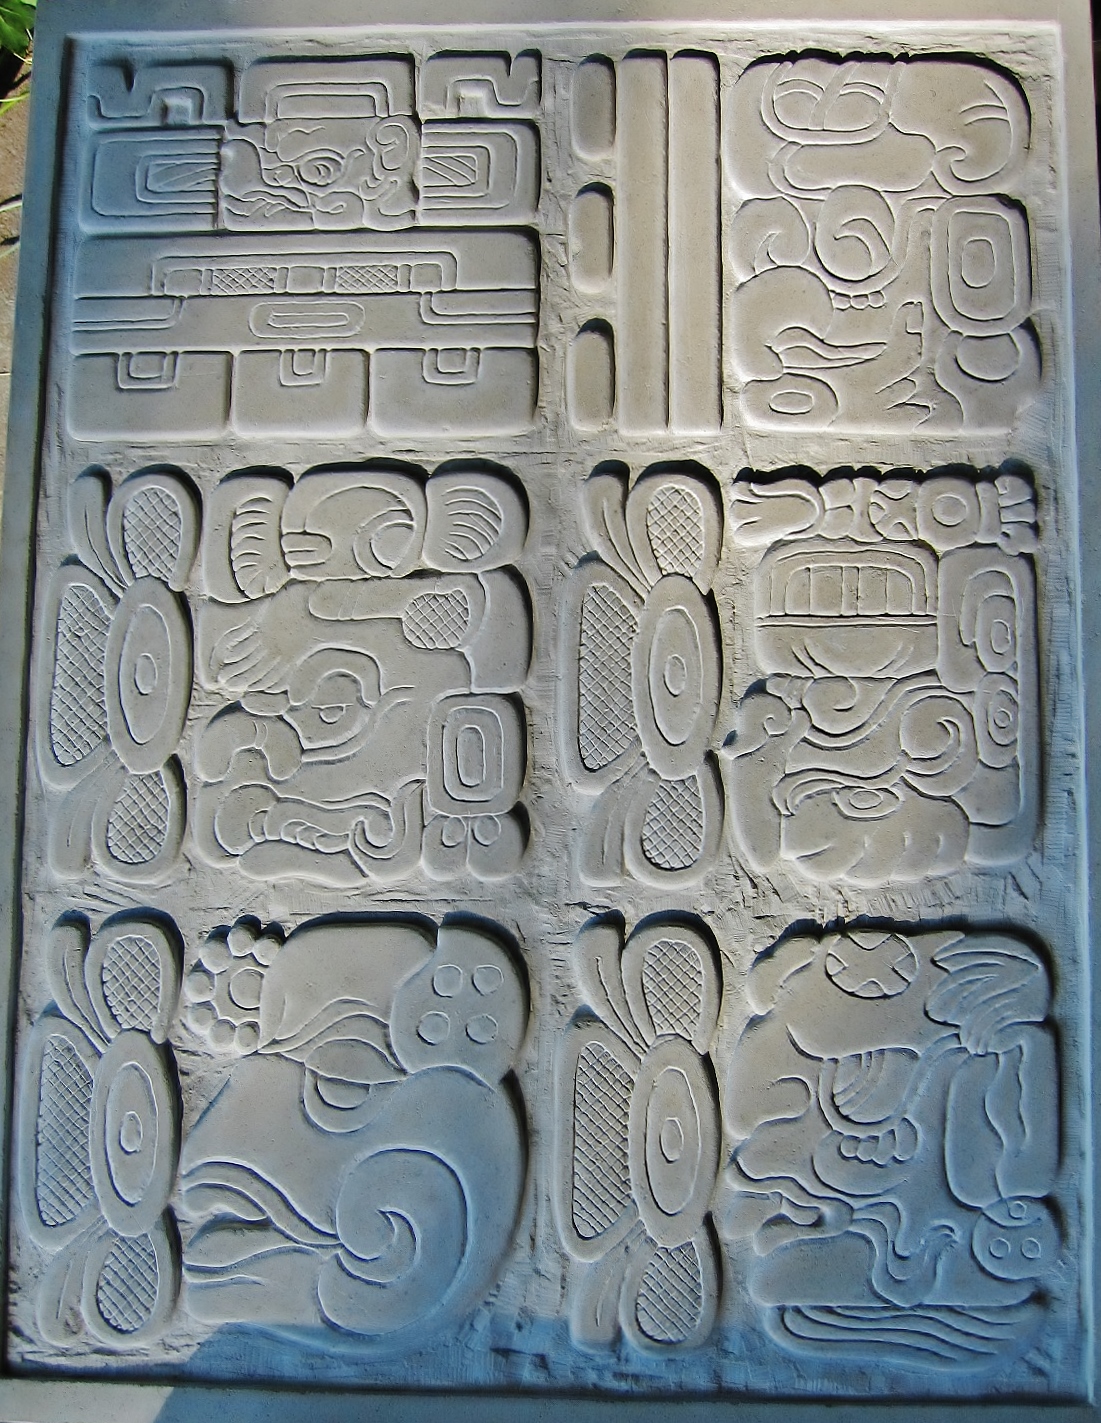 Mayan Calendar depicting December 21 2012